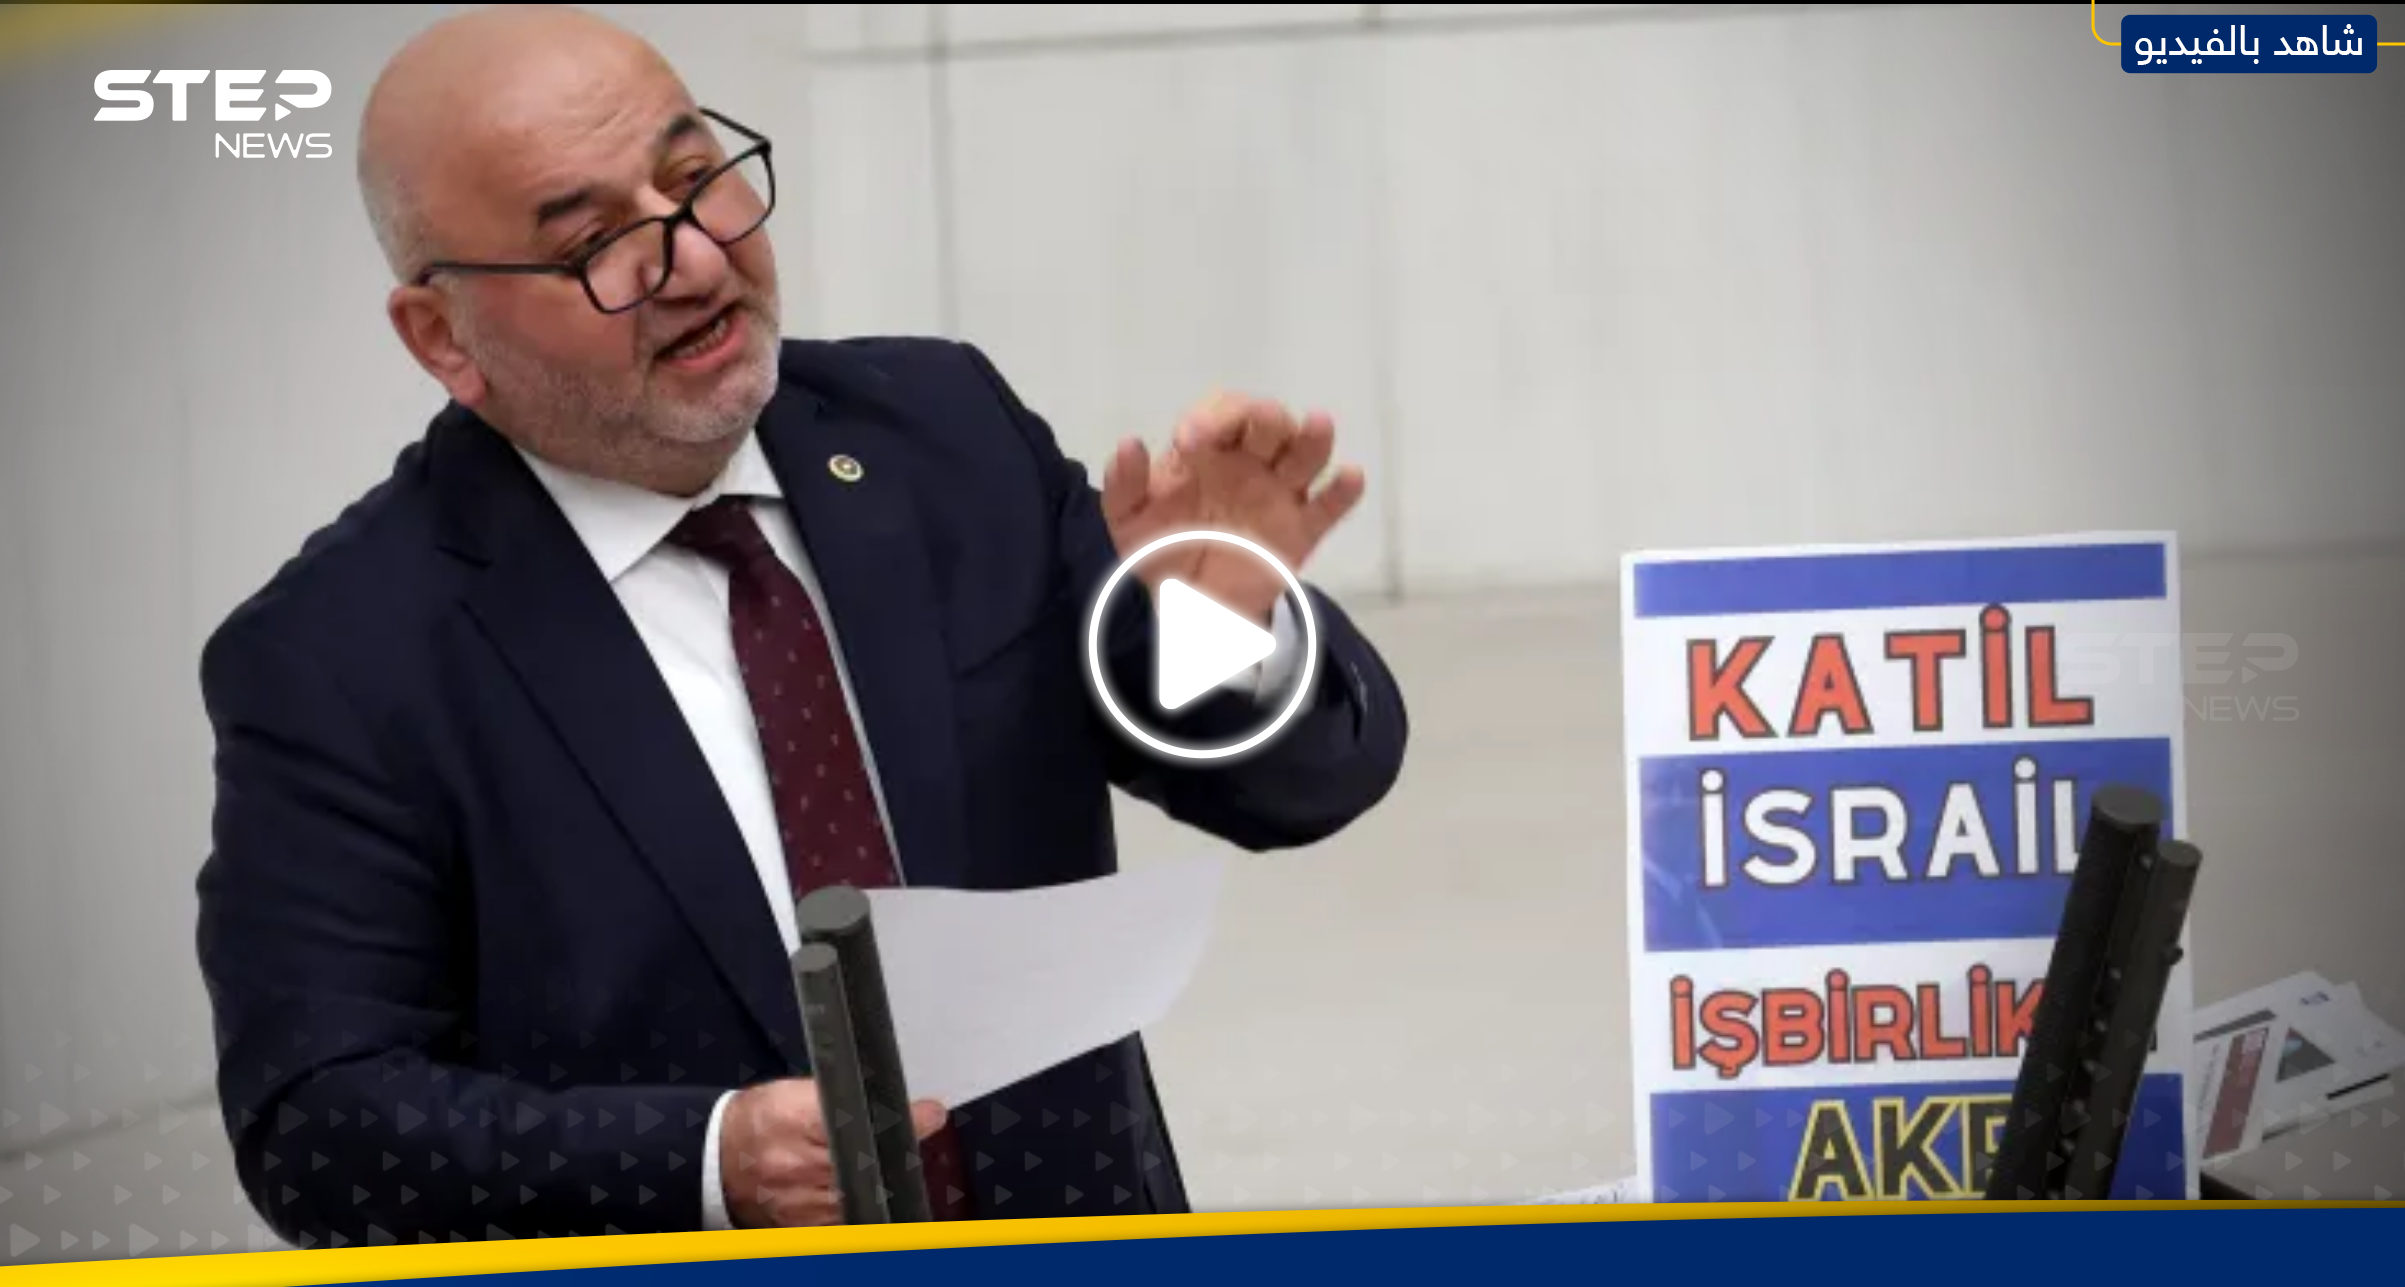 بالفيديو|| لحظة توقف قلب نائب تركي كان يتحدث عن إسرائيل وحرب غزة.. هذه آخر كلمة قالها